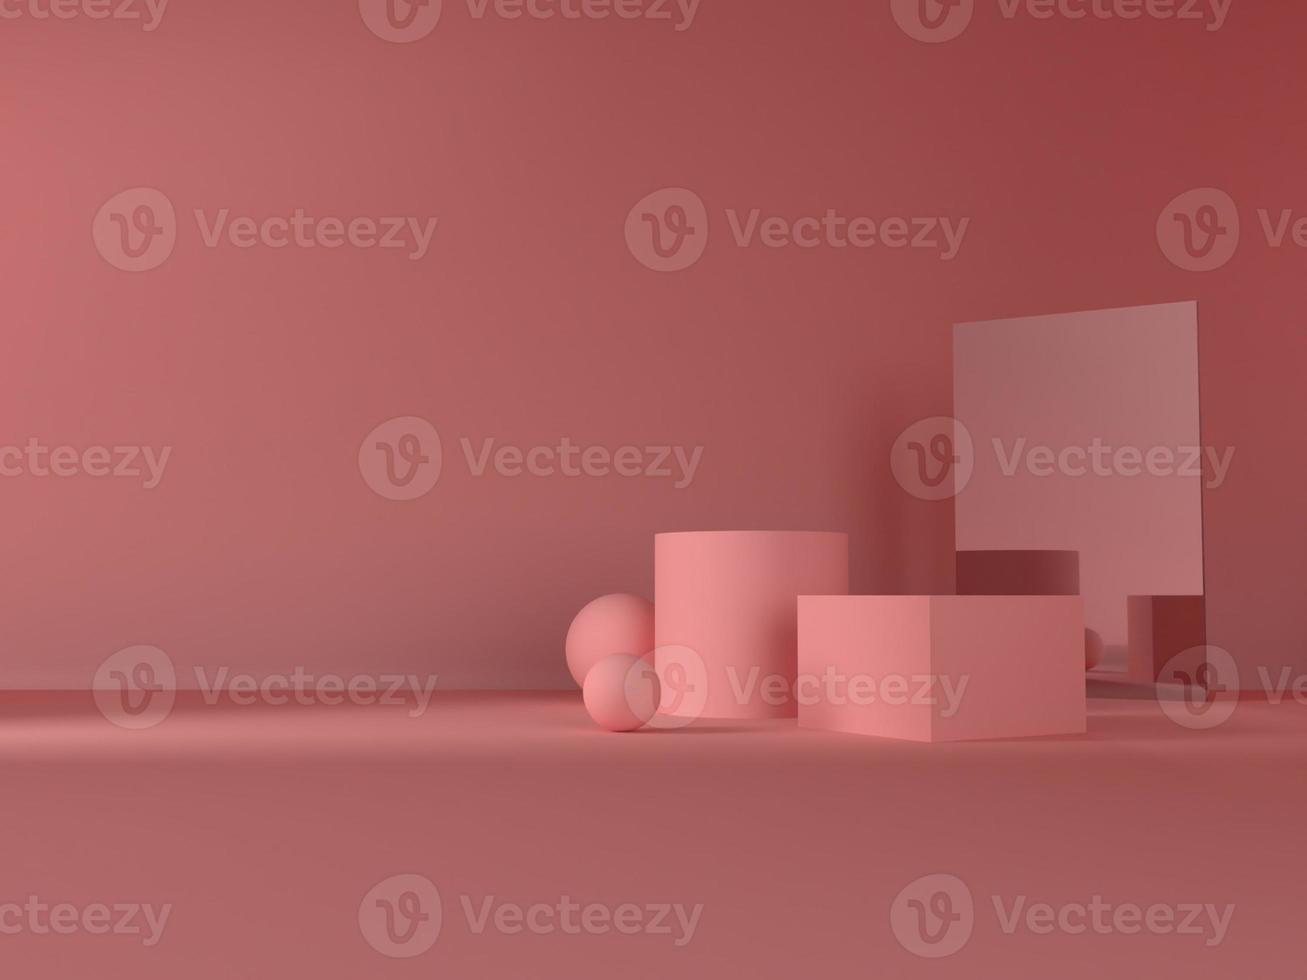 3D renderização abstrata. Produtos de beleza definidos para maquete de embalagens de cosméticos e cuidados com a pele design mínimo em fundo rosa pastel foto